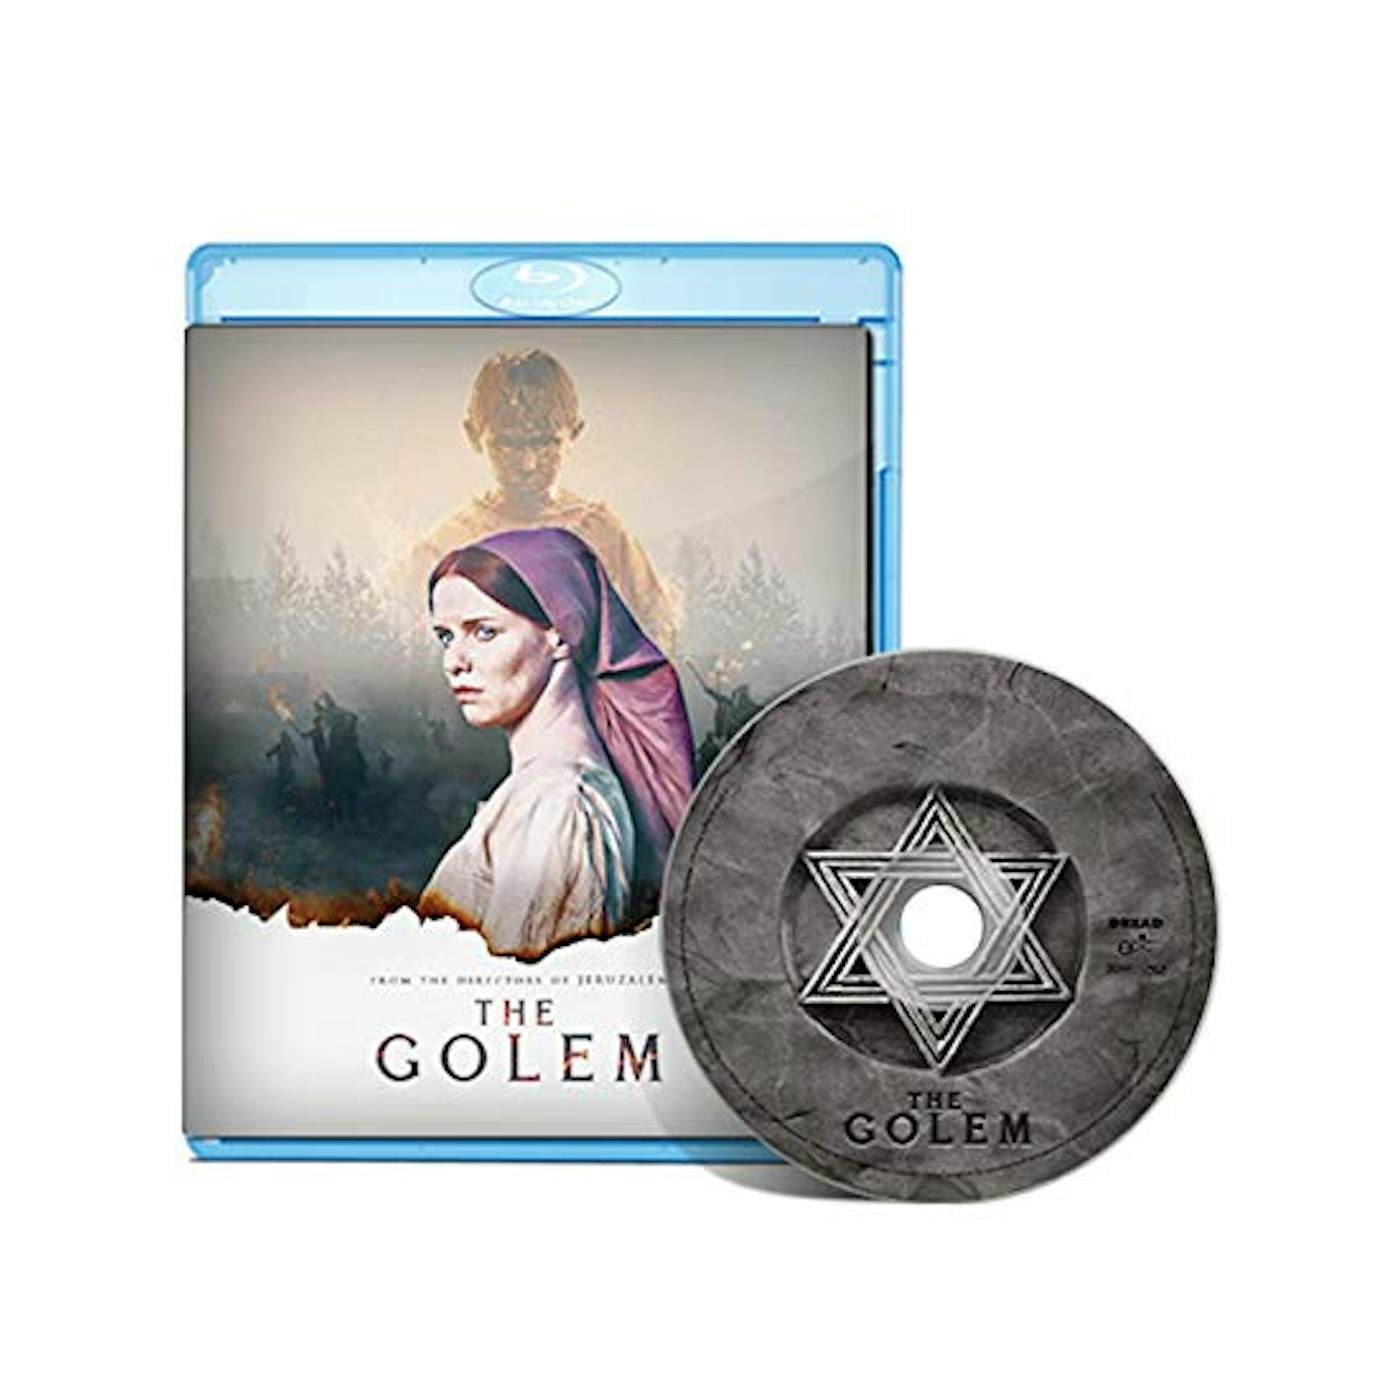 GOLEM Blu-ray